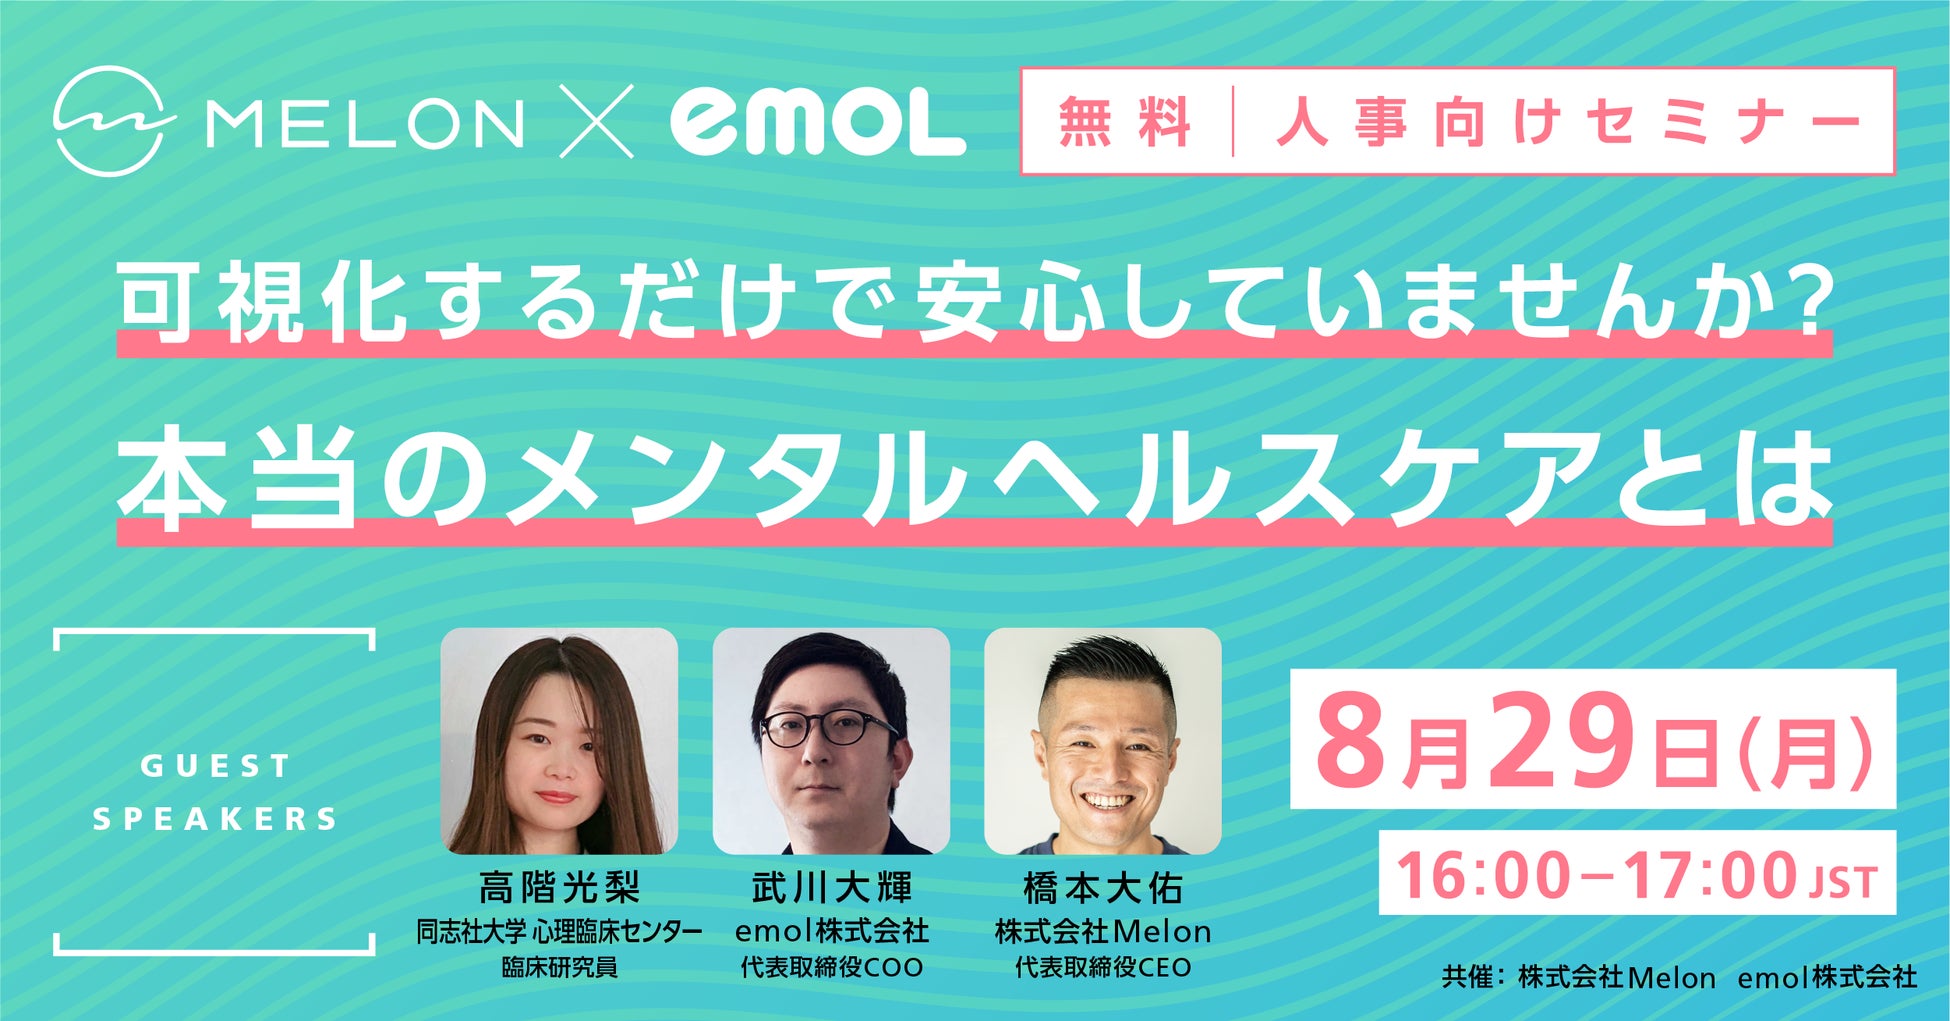 オンラインマインドフルネスのMelon、『日本国内で行われているメンタルヘルス対策の基本と、従業員が自身で実施できるメンタルセルフケアの実践方法』をテーマにemol社と共催セミナーを開催